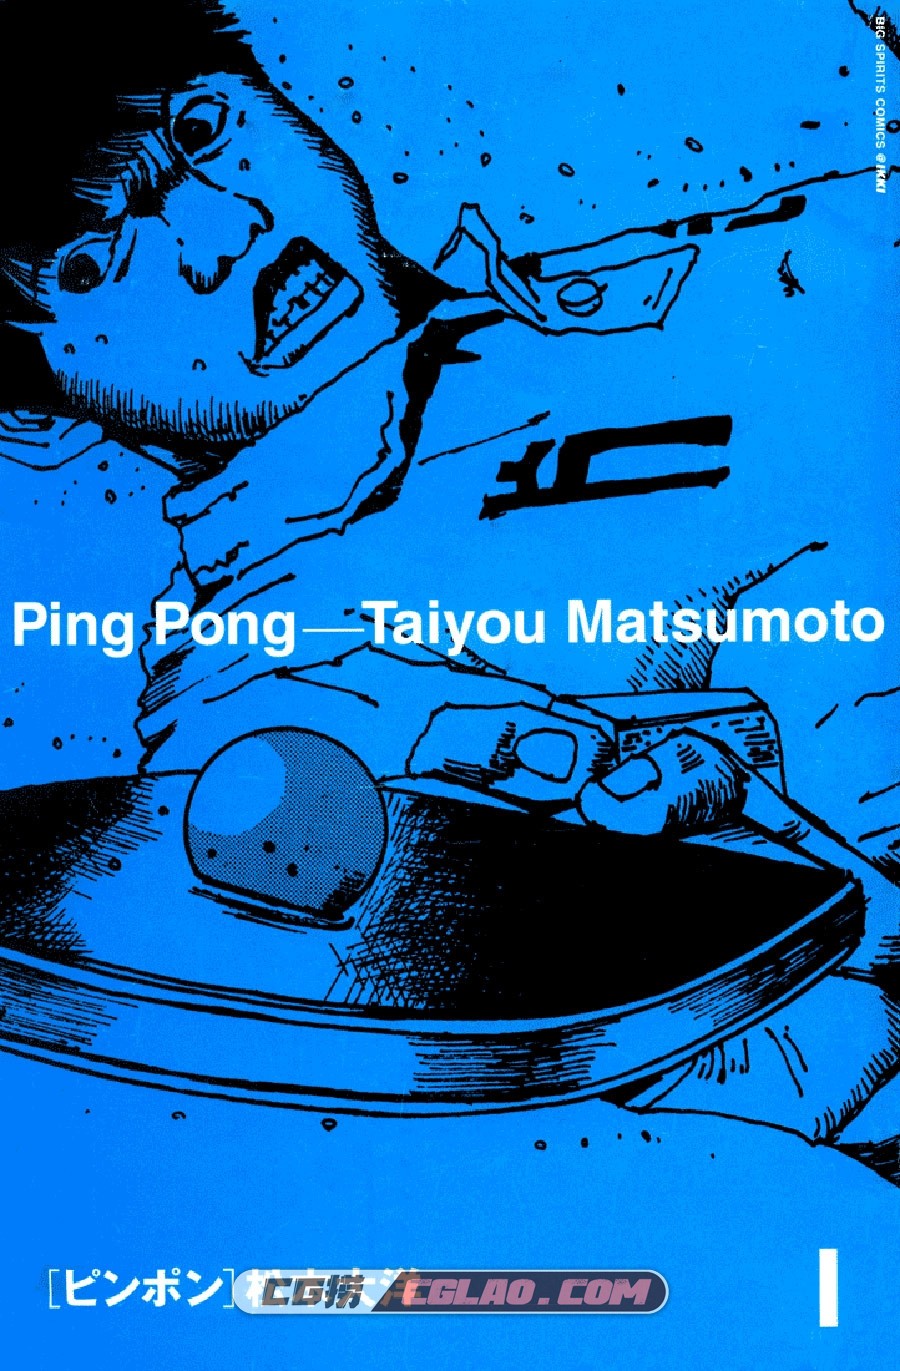 乒乓pingpong 松本大洋 1-5卷 漫画全集完结下载 百度网盘,PingPong_v01c01p001.jpg